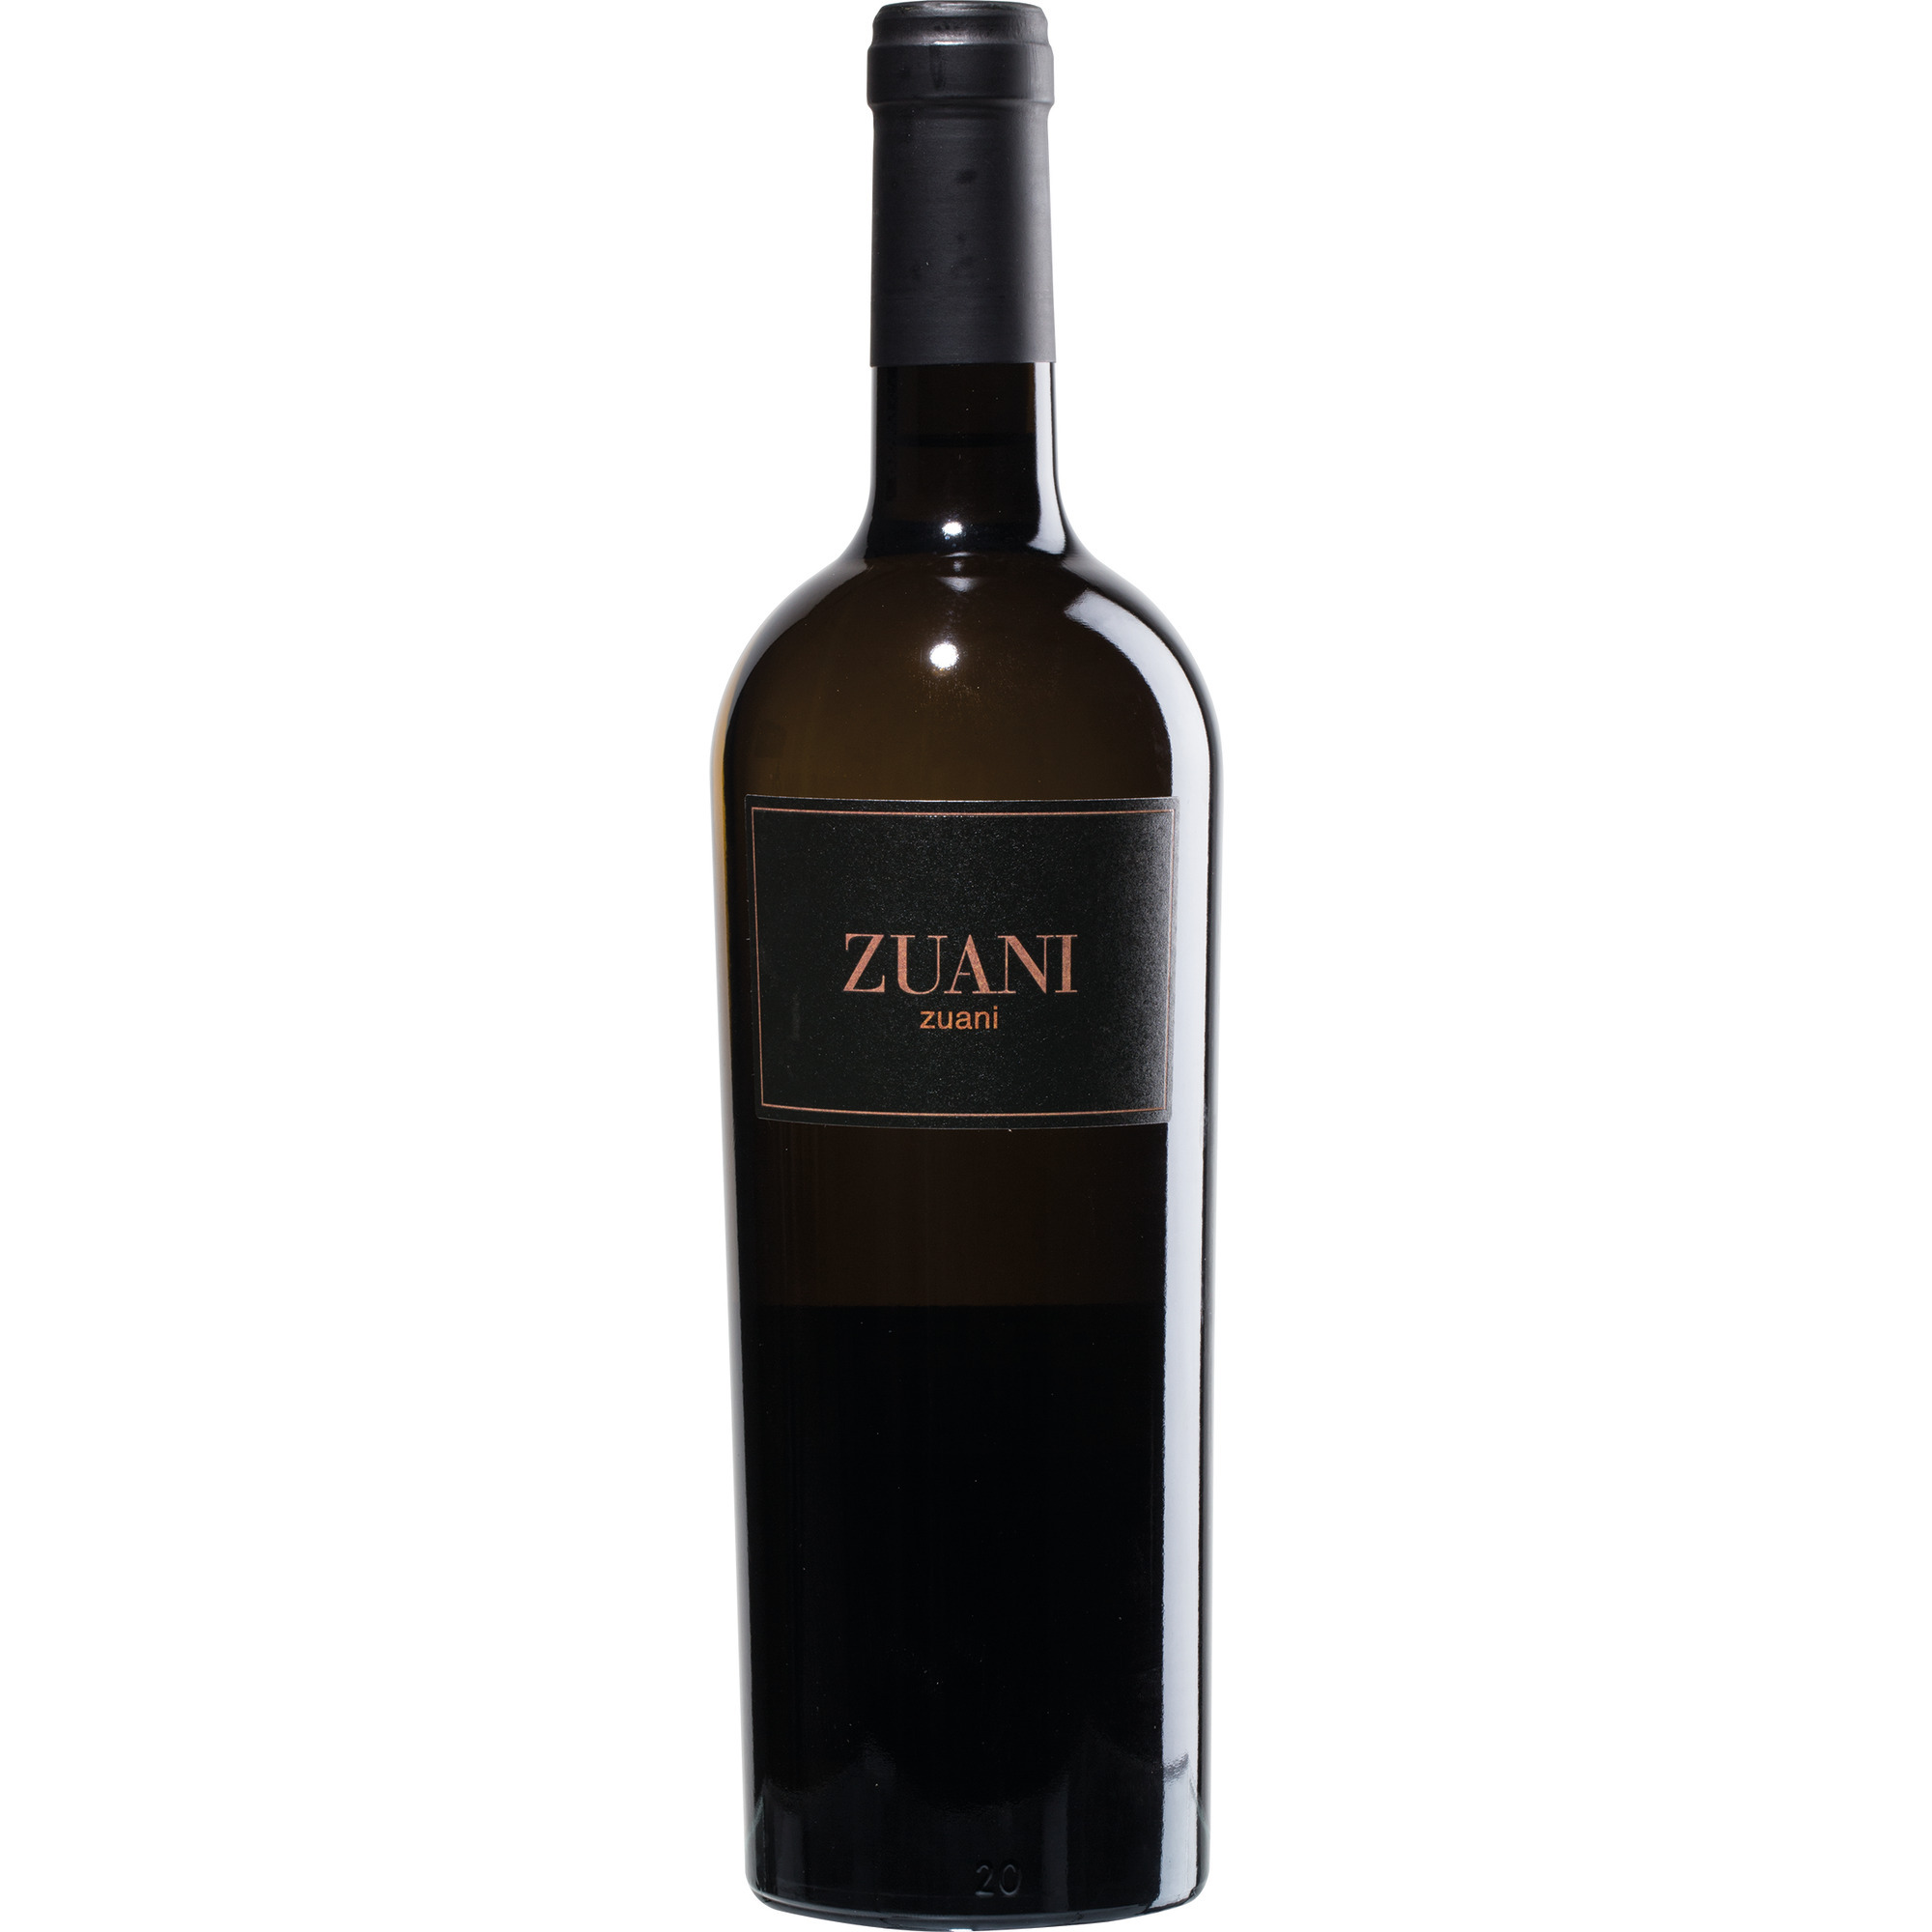 Zuani Zuani Bianco Reserva 0,75l, 2018